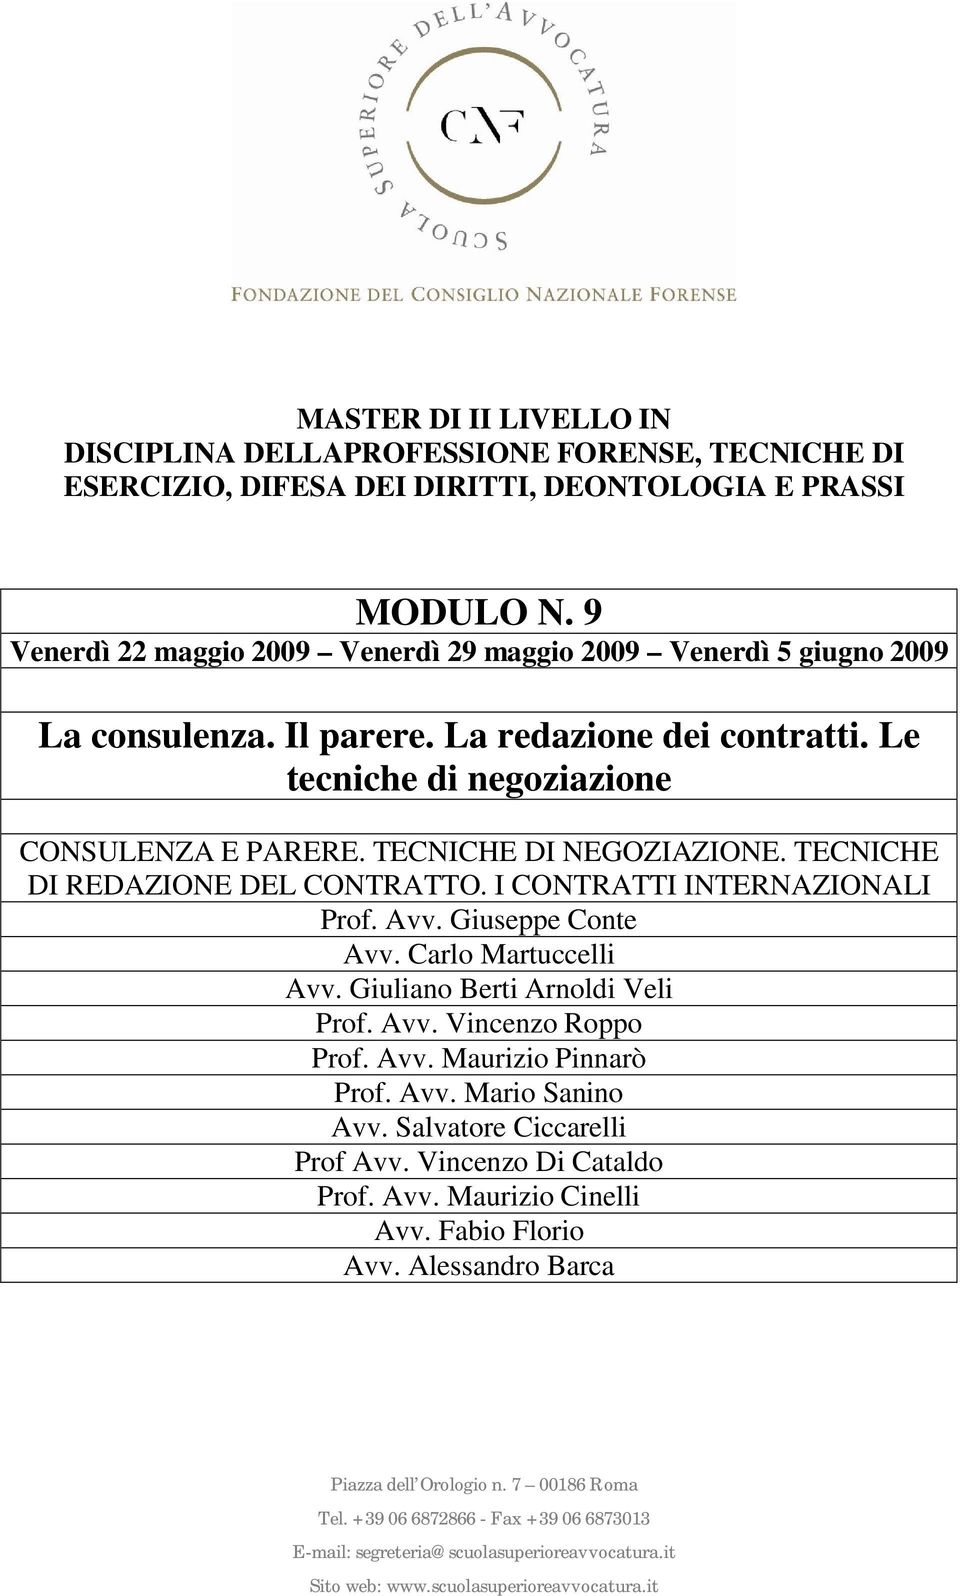 I CONTRATTI INTERNAZIONALI Prof. Avv. Giuseppe Conte Avv. Carlo Martuccelli Avv. Giuliano Berti Arnoldi Veli Prof. Avv. Vincenzo Roppo Prof.